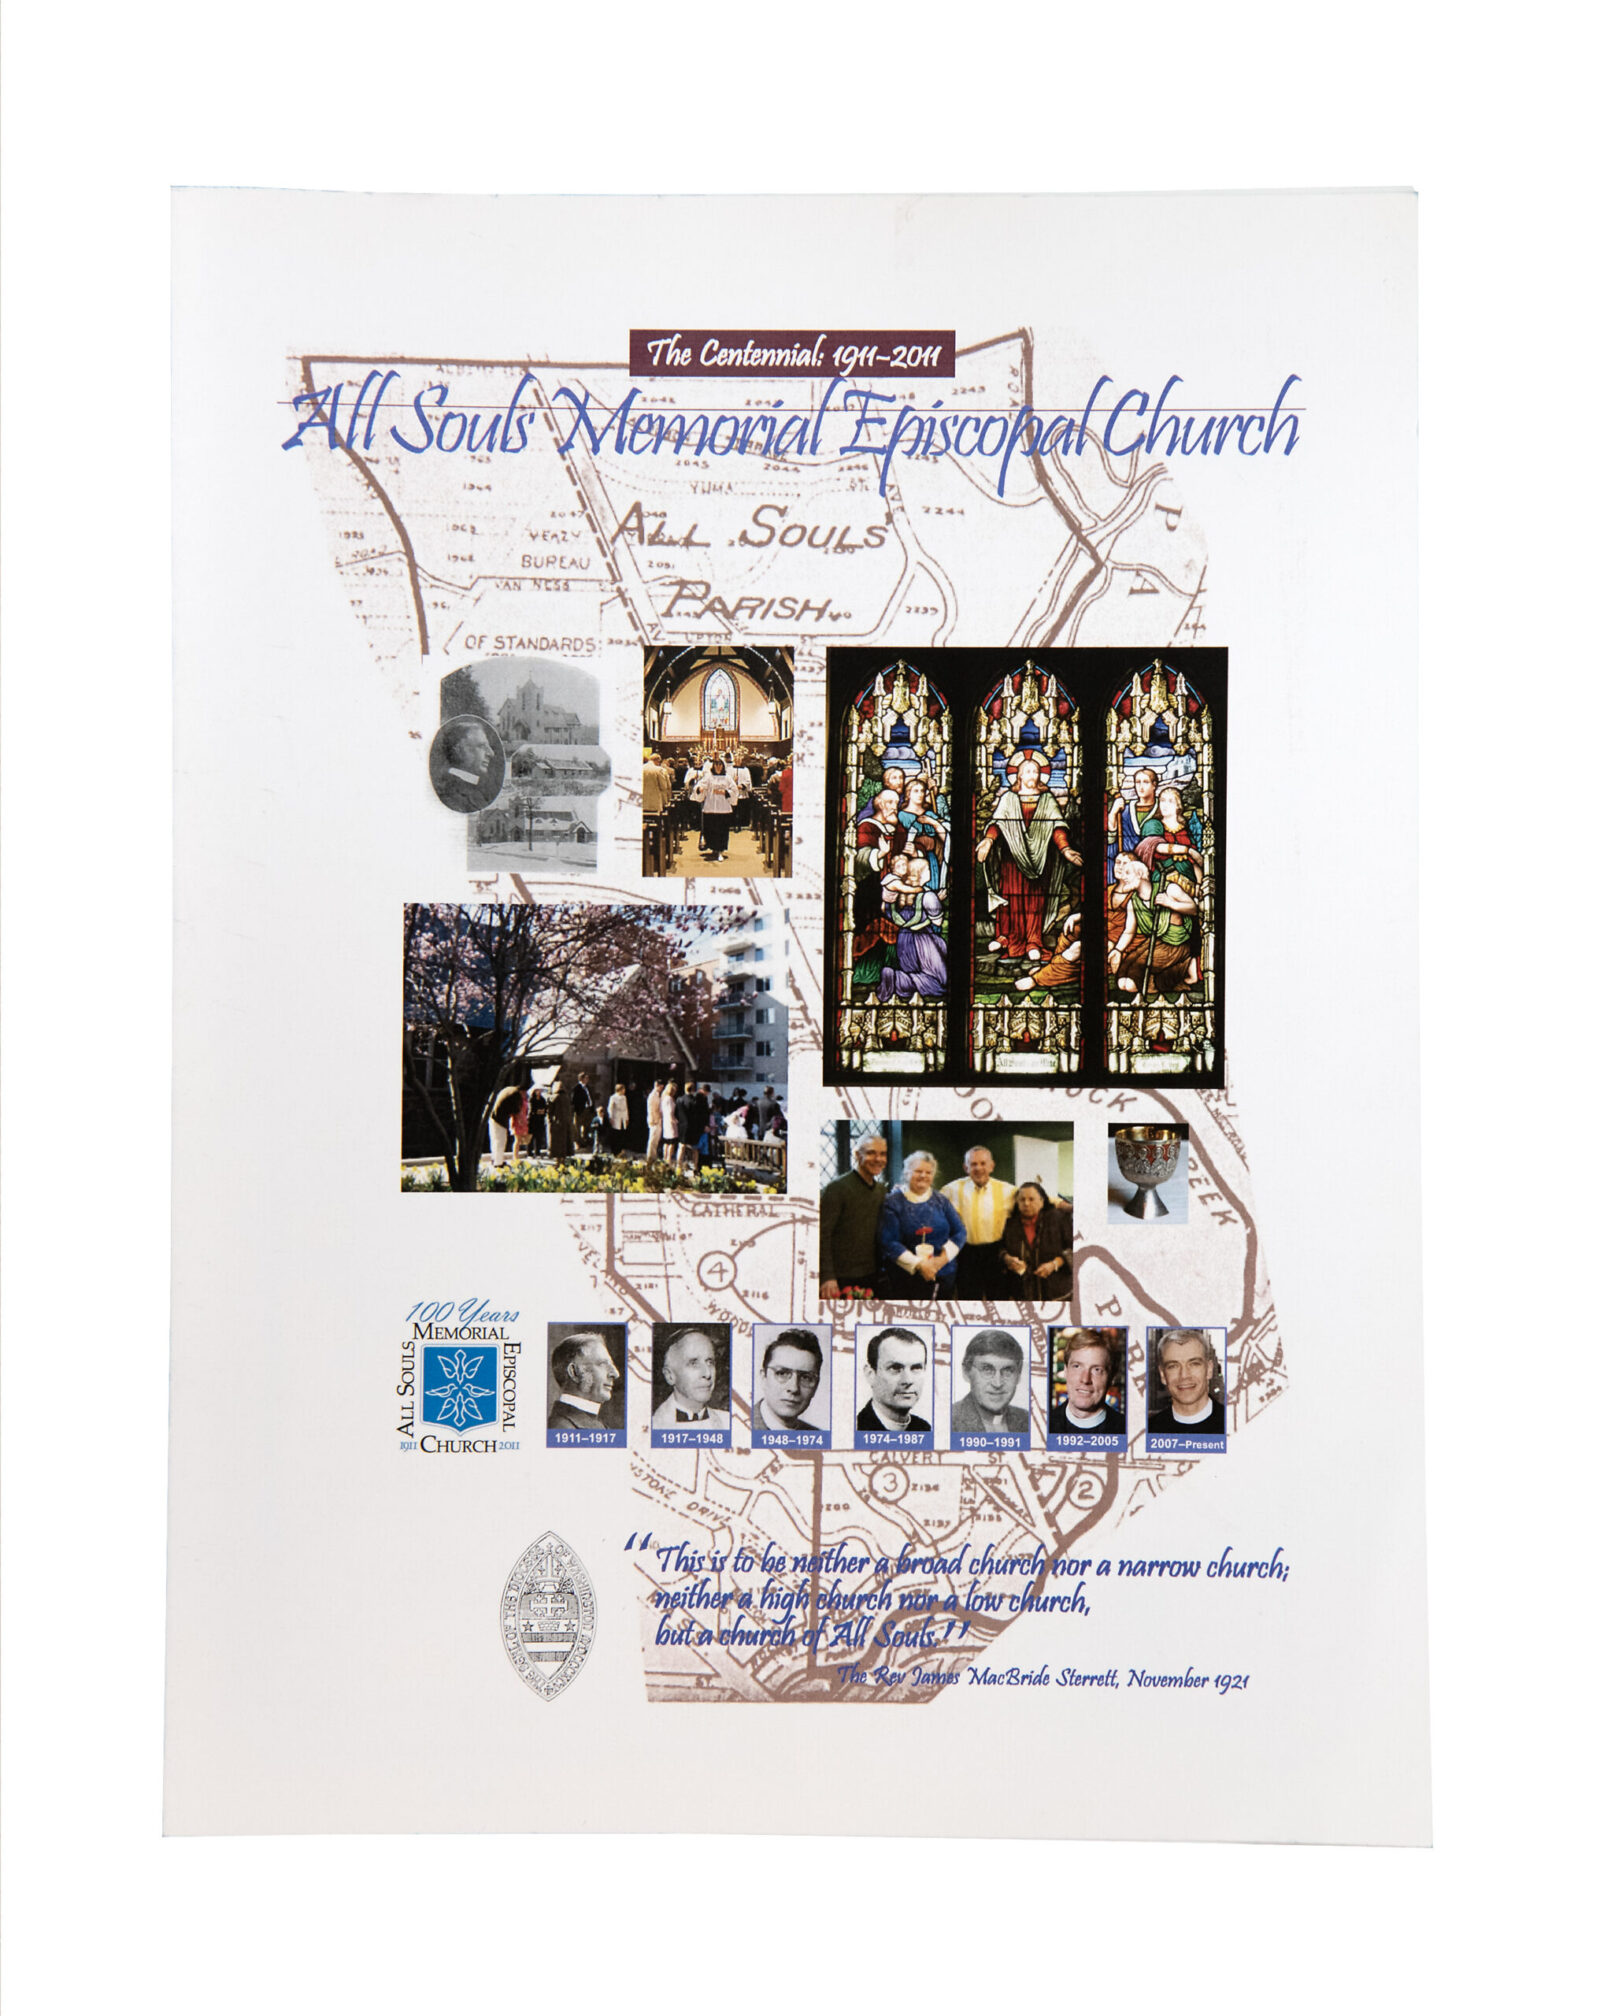 Centennial publication for All Souls Memoirs Episcopal Church